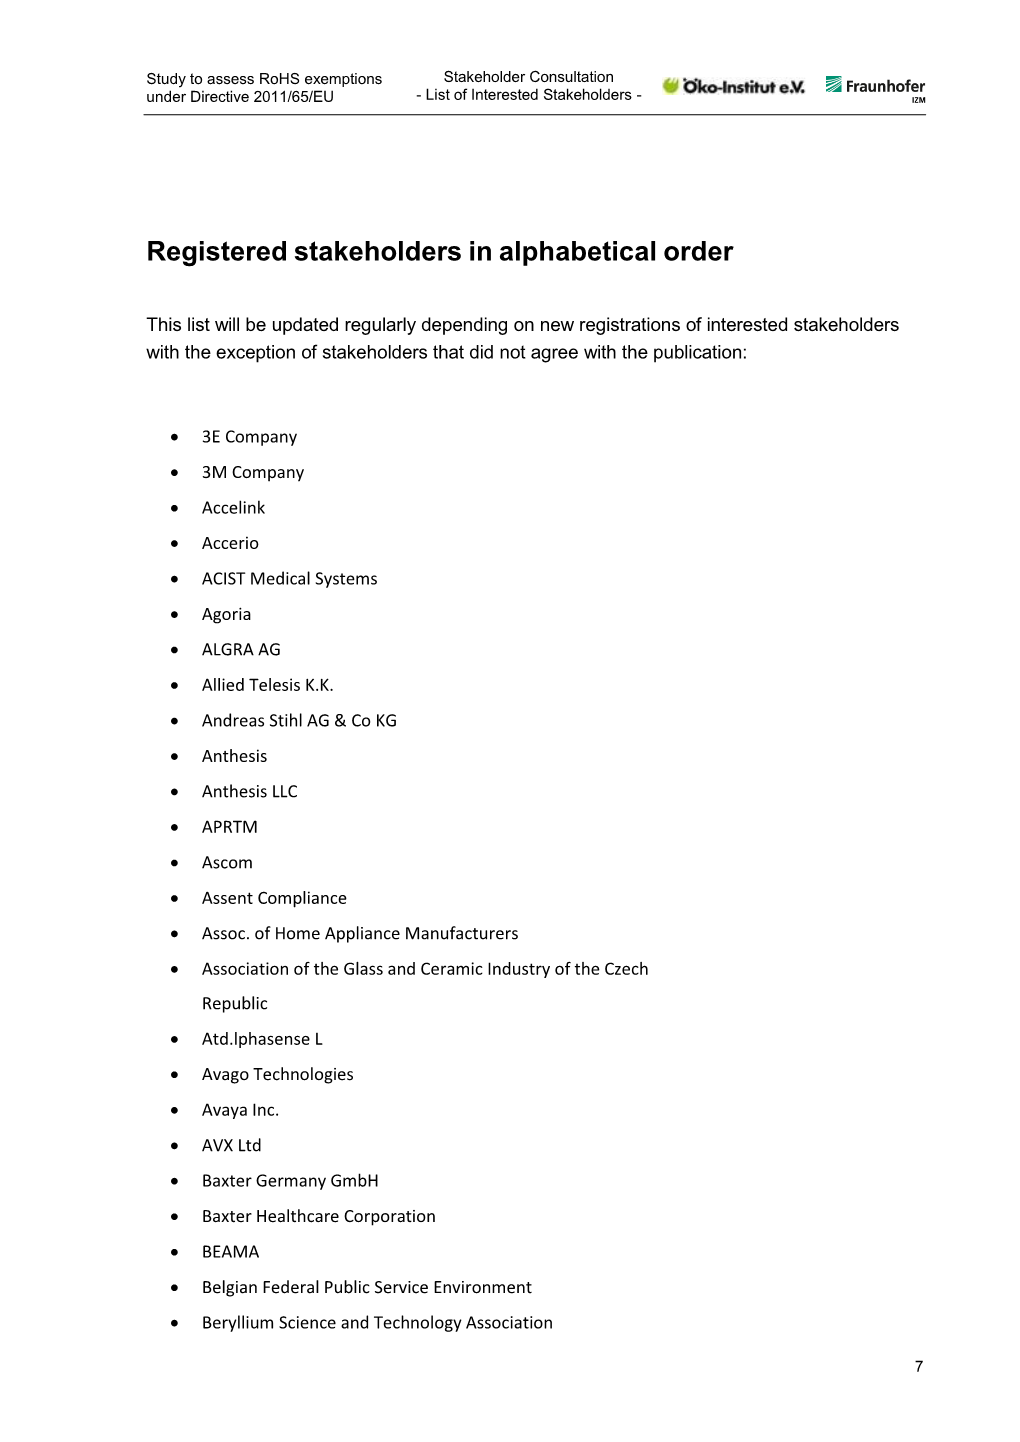 Registered Stakeholders in Alphabetical Order